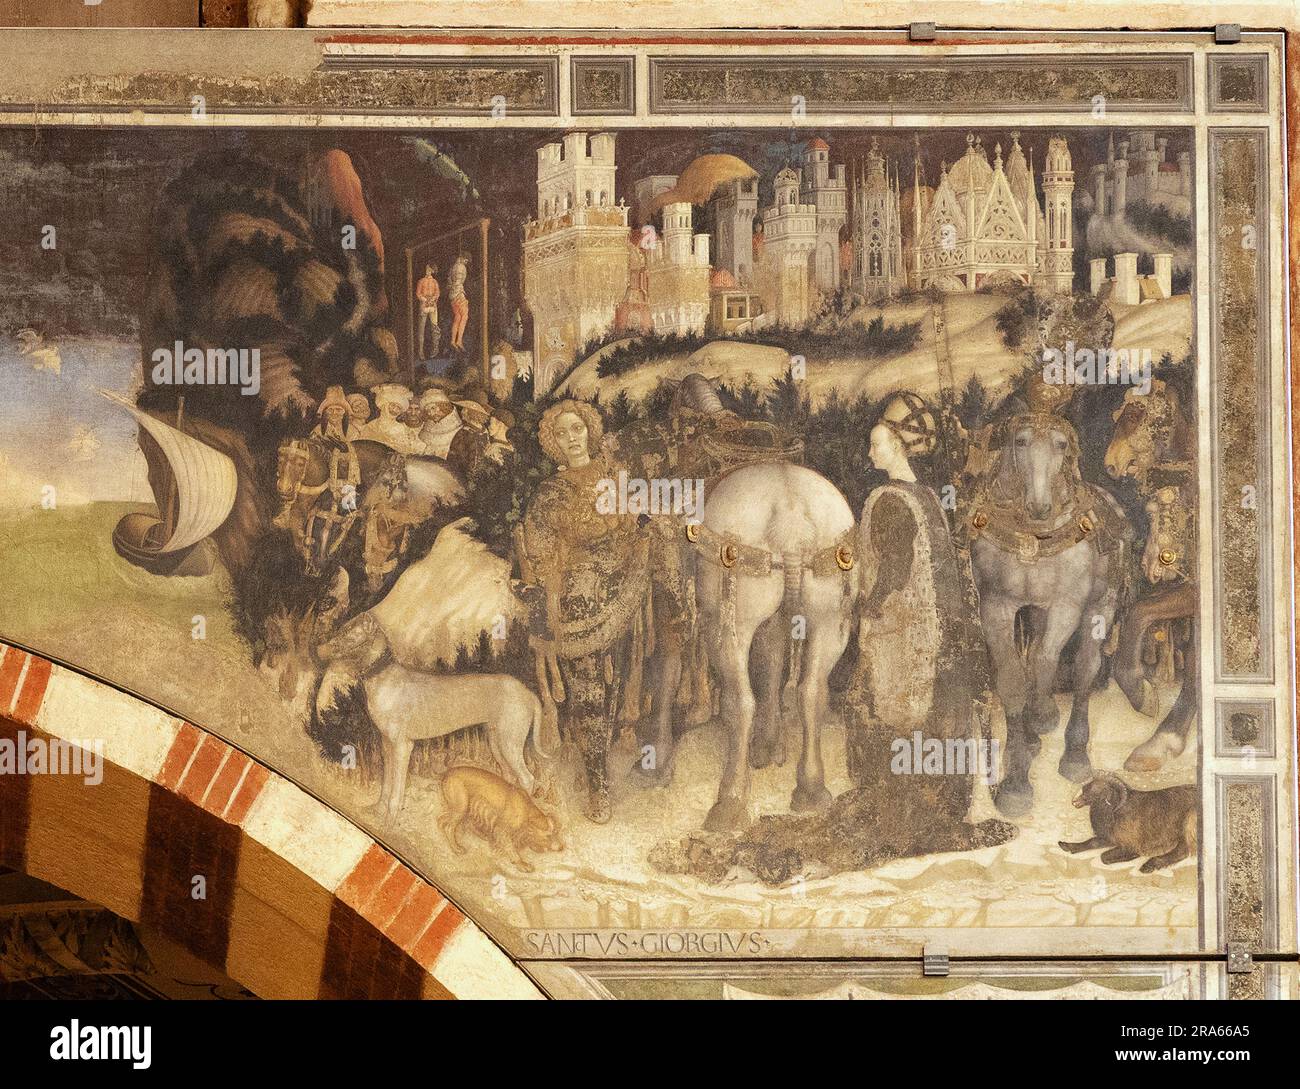 Details von der rechten Seite der Pisanello-Gemälde von St. George und der Prinzessin, 1433-1438; Pellegrini-Kapelle, Basilika der Heiligen Anastasia Verona Italien. Stockfoto